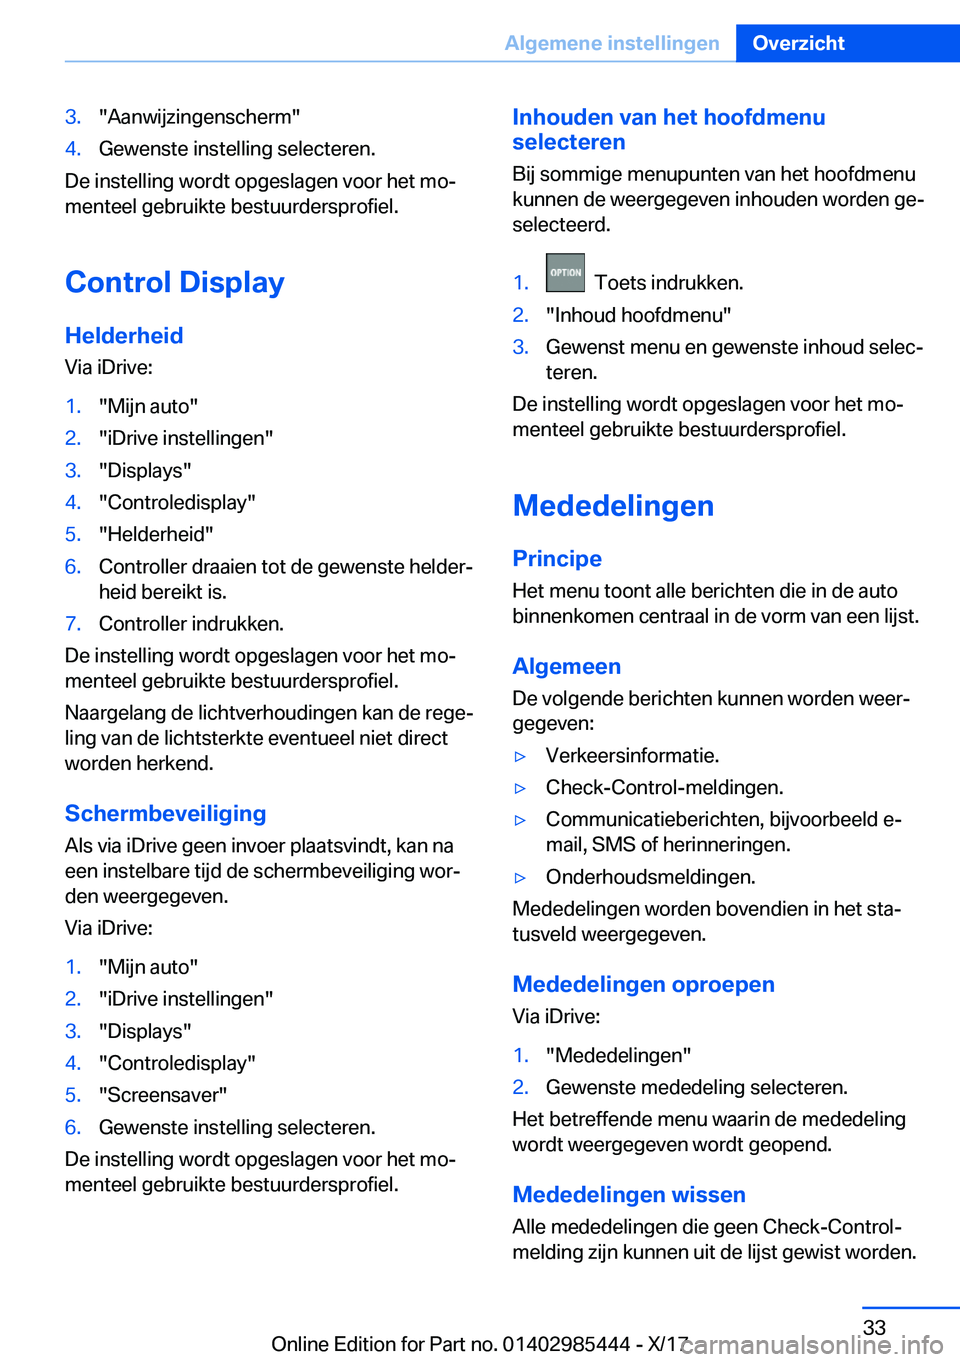 BMW X1 2018  Instructieboekjes (in Dutch) �3�.�"�A�a�n�w�i�j�z�i�n�g�e�n�s�c�h�e�r�m�"�4�.�G�e�w�e�n�s�t�e� �i�n�s�t�e�l�l�i�n�g� �s�e�l�e�c�t�e�r�e�n�.
�D�e� �i�n�s�t�e�l�l�i�n�g� �w�o�r�d�t� �o�p�g�e�s�l�a�g�e�n� �v�o�o�r� �h�e�t� �